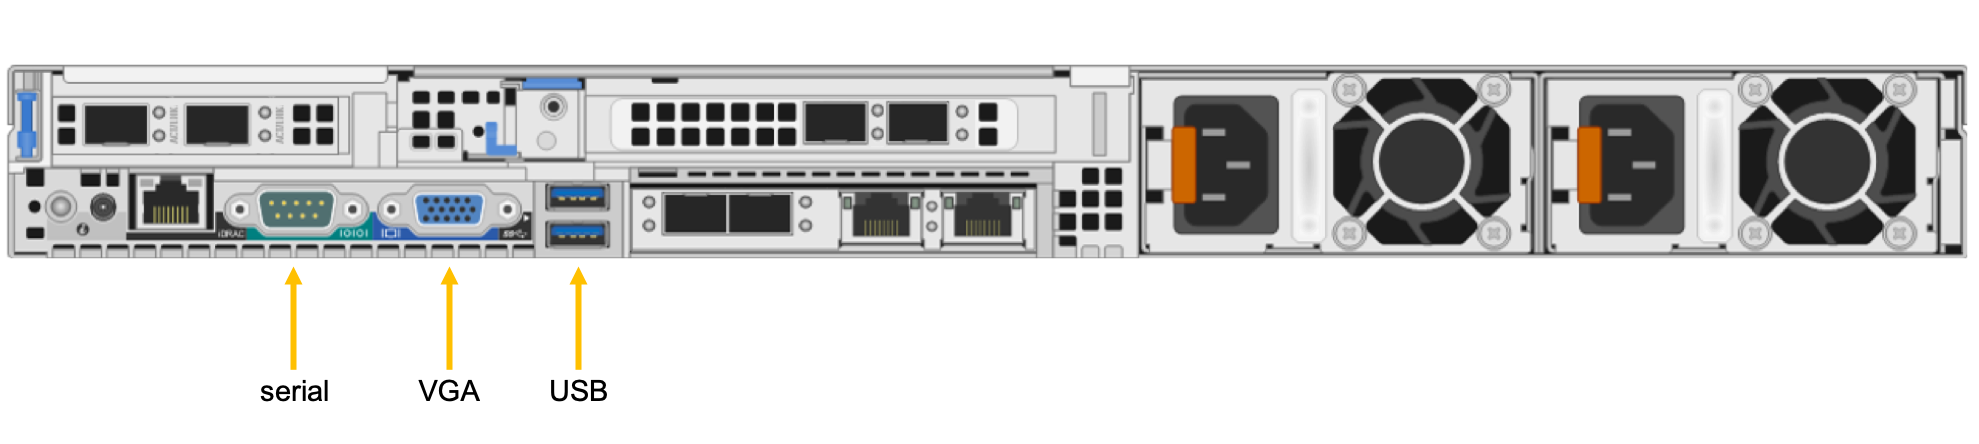 Diagramm: Rückseite von Azure FXT Edge Filer mit Beschriftungen für seriellen Anschluss, VGA-Anschluss und USB-Anschlüsse